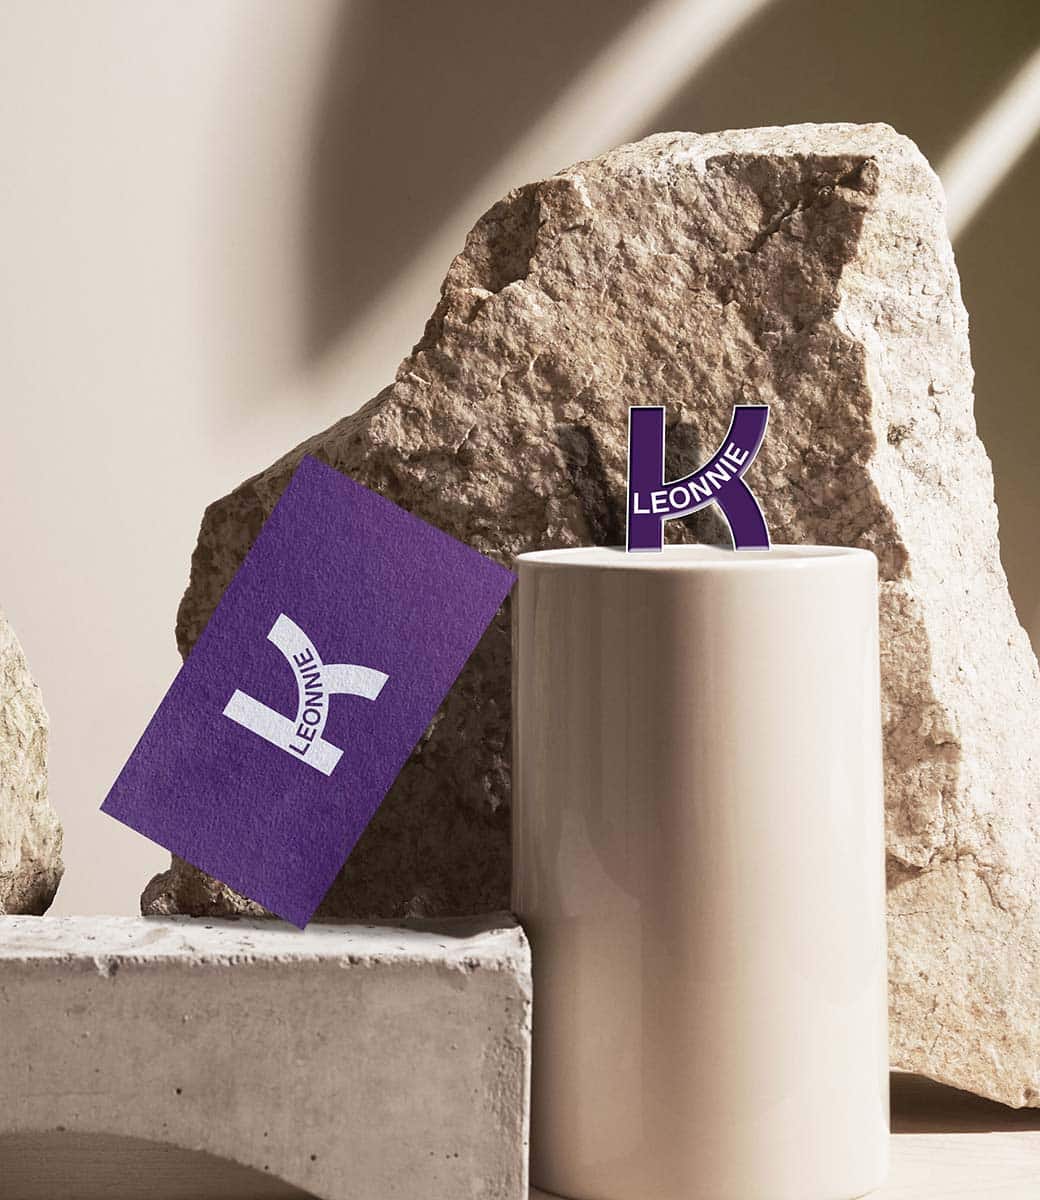 Eine lilafarbene Visitenkarte lernt an grob gebrochenen steinen